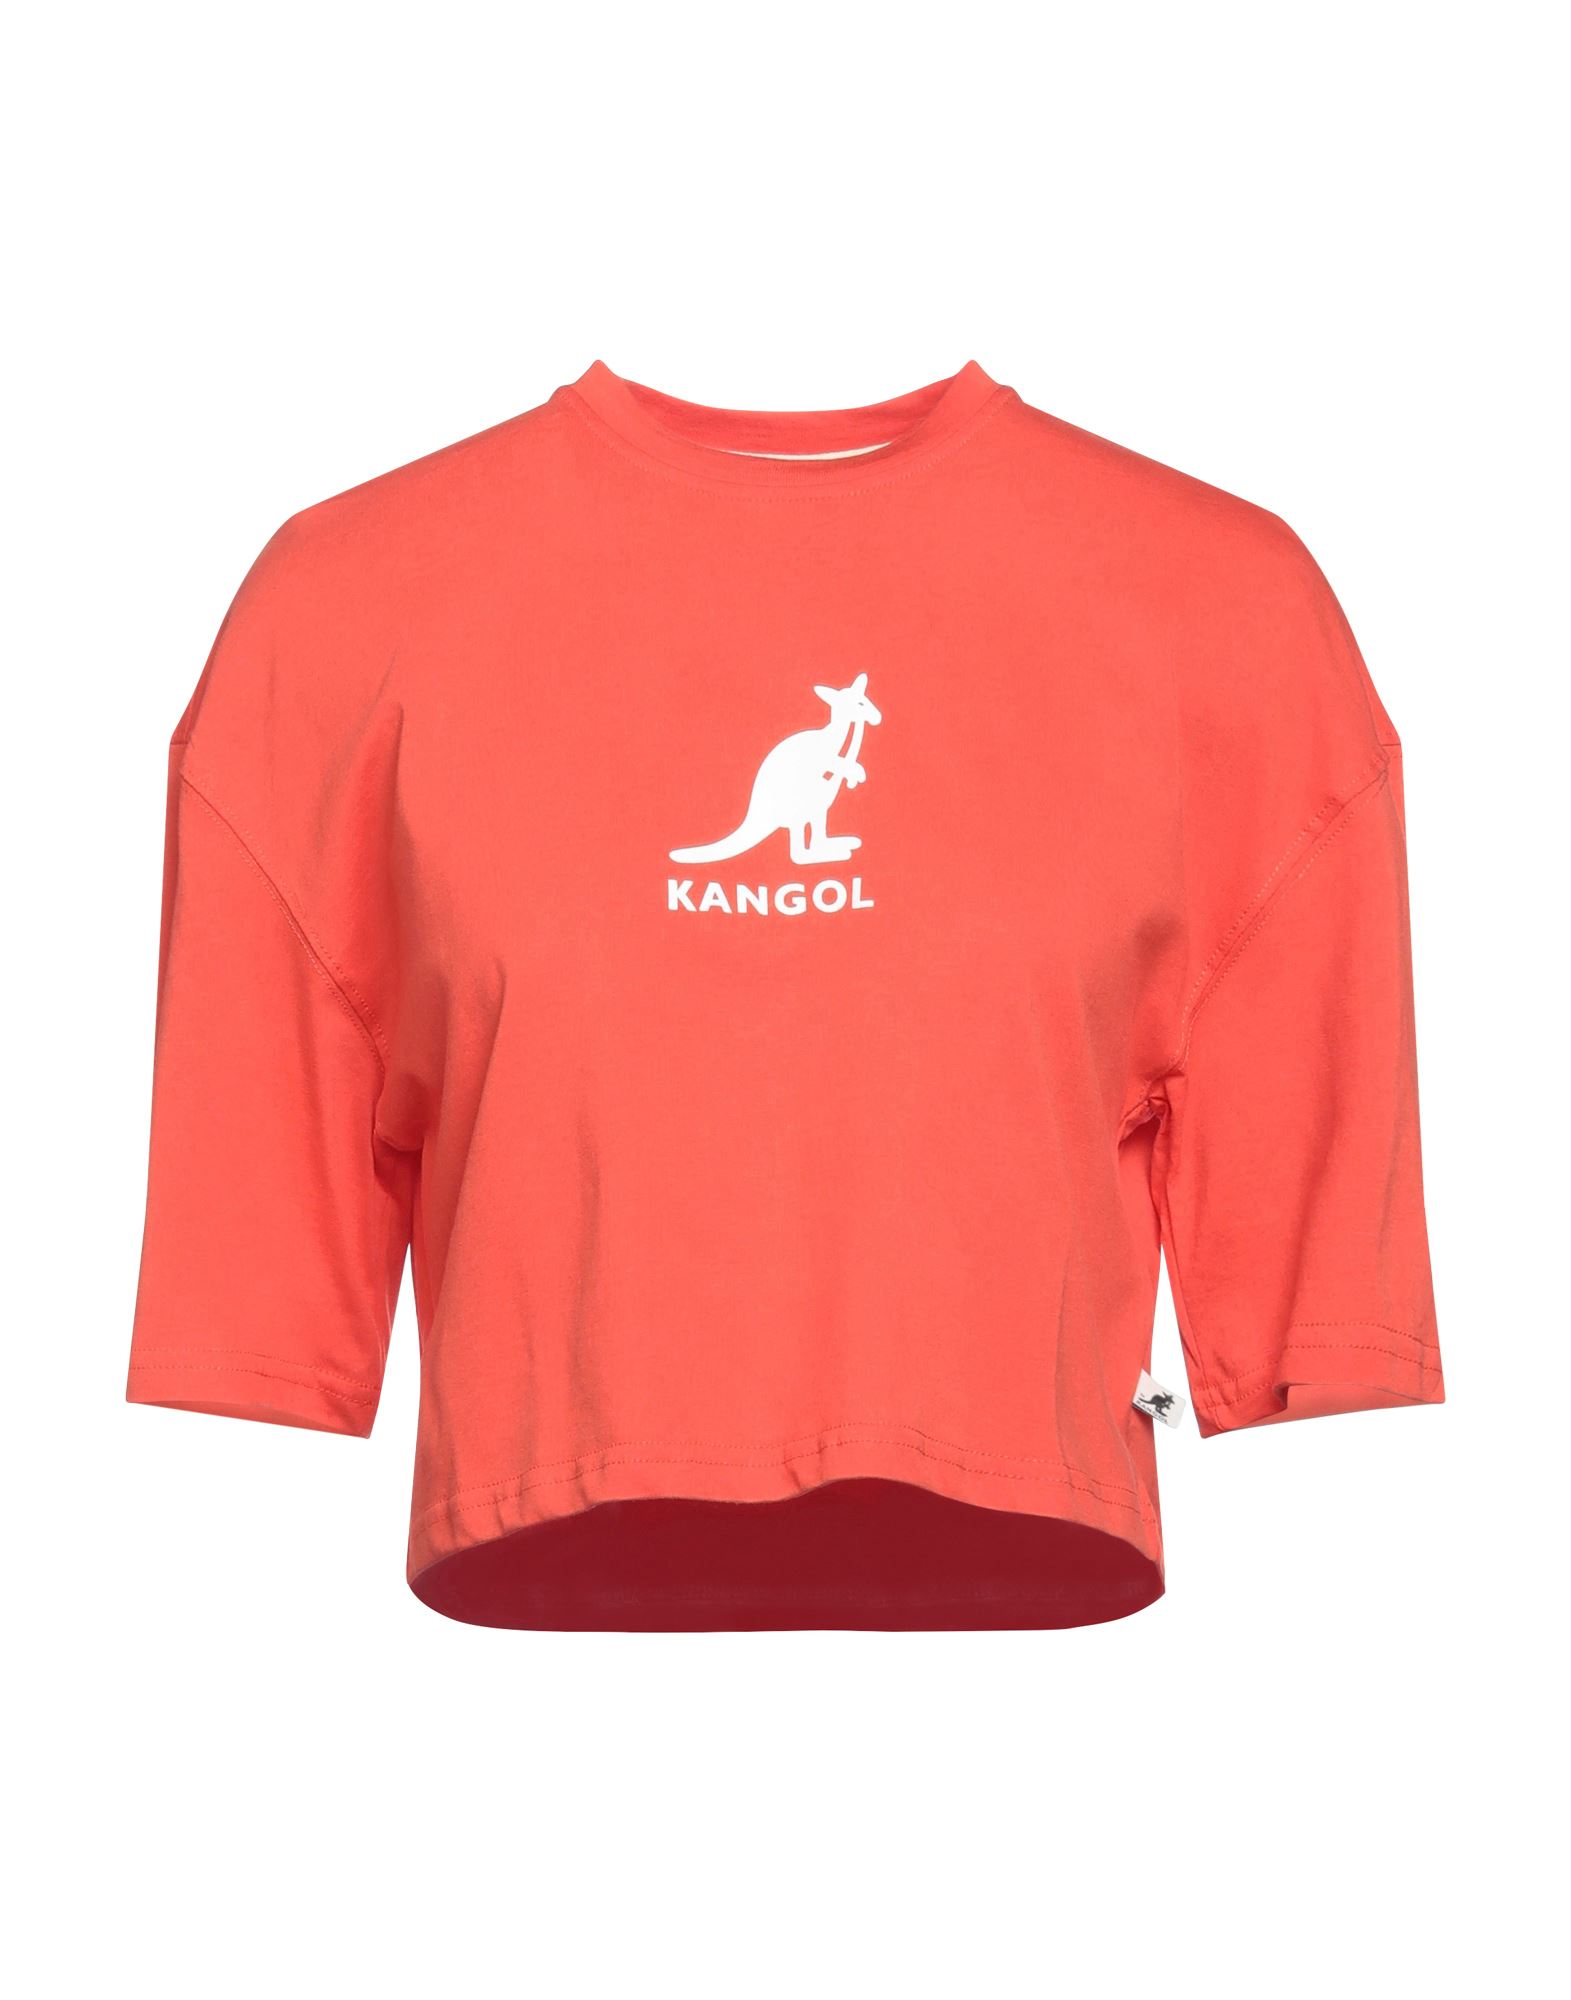 KANGOL T-shirts Damen Tomatenrot von KANGOL